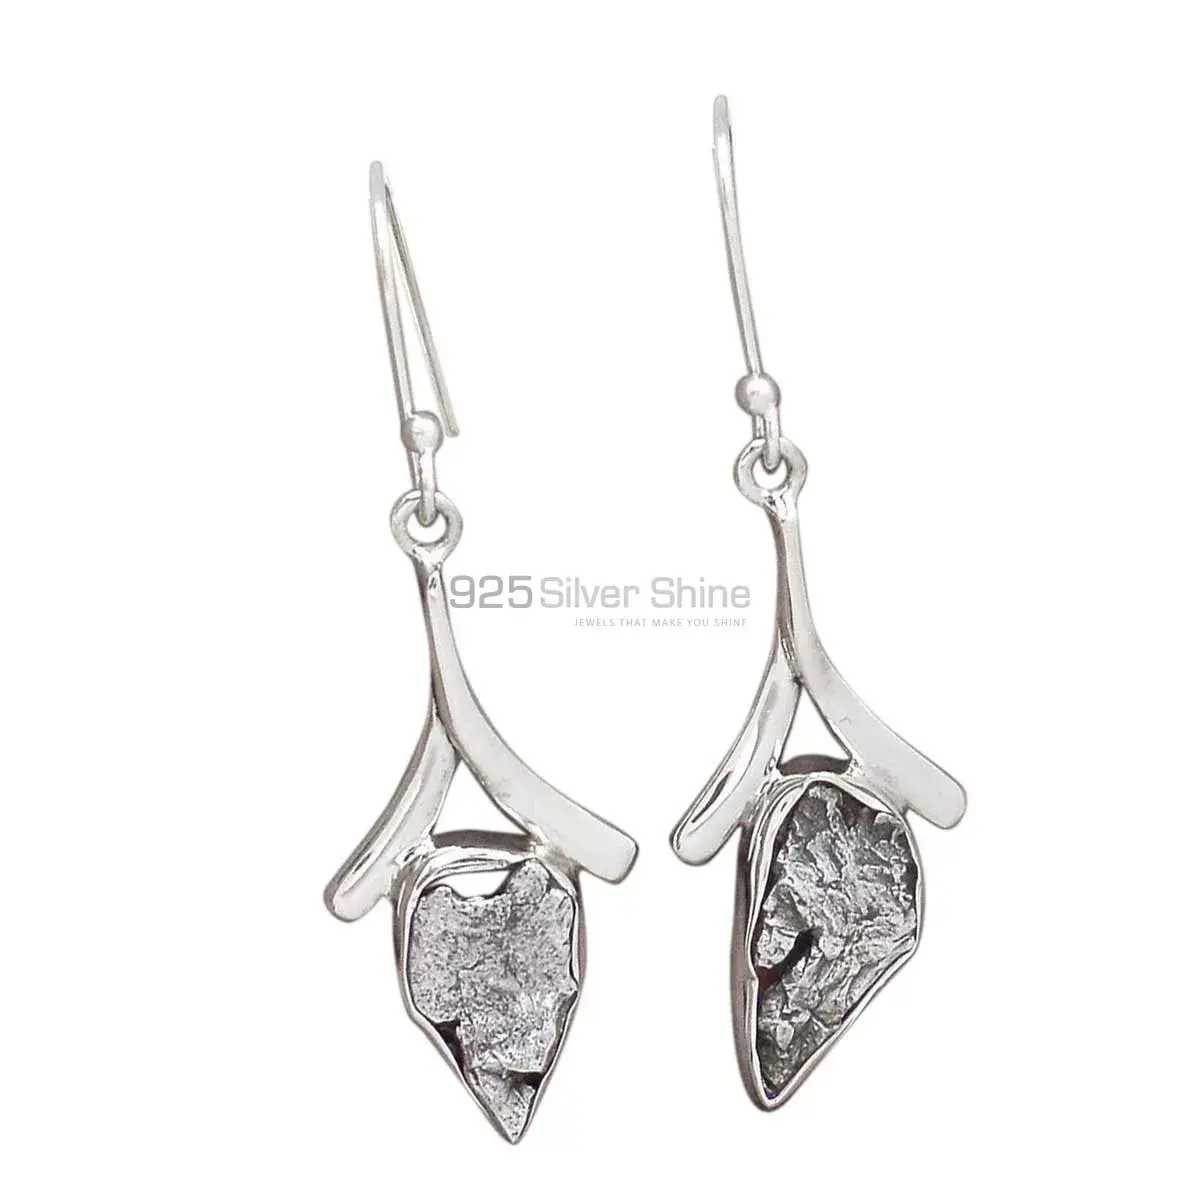 Beautiful 925 Sterling Silver Earrings Wholesaler In Pyrite Gemstone Jewelry 925SE2161